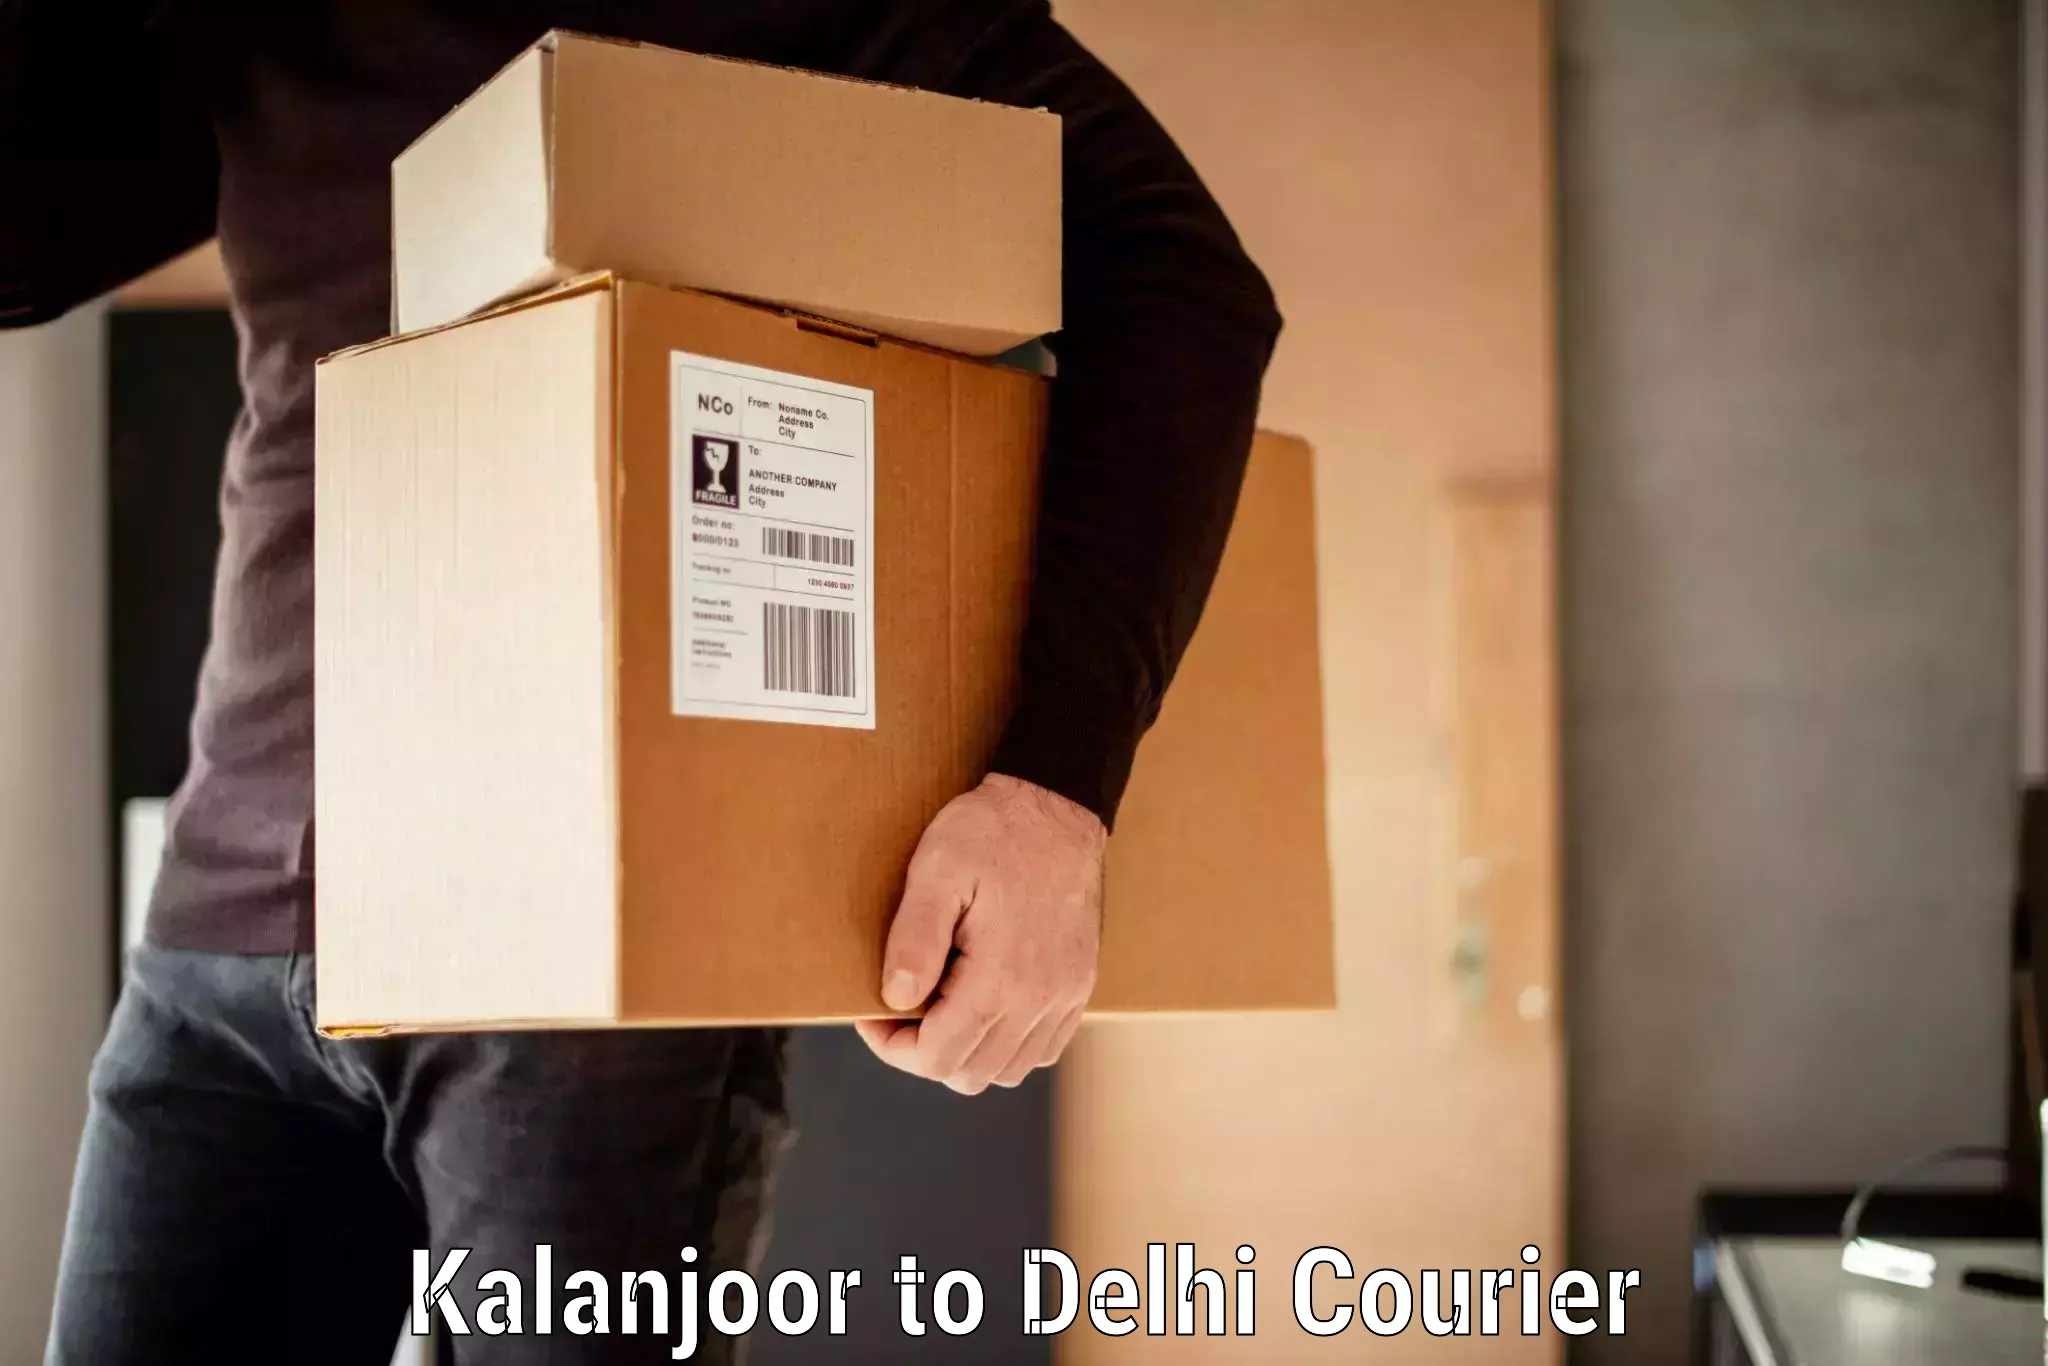 Baggage relocation service Kalanjoor to University of Delhi